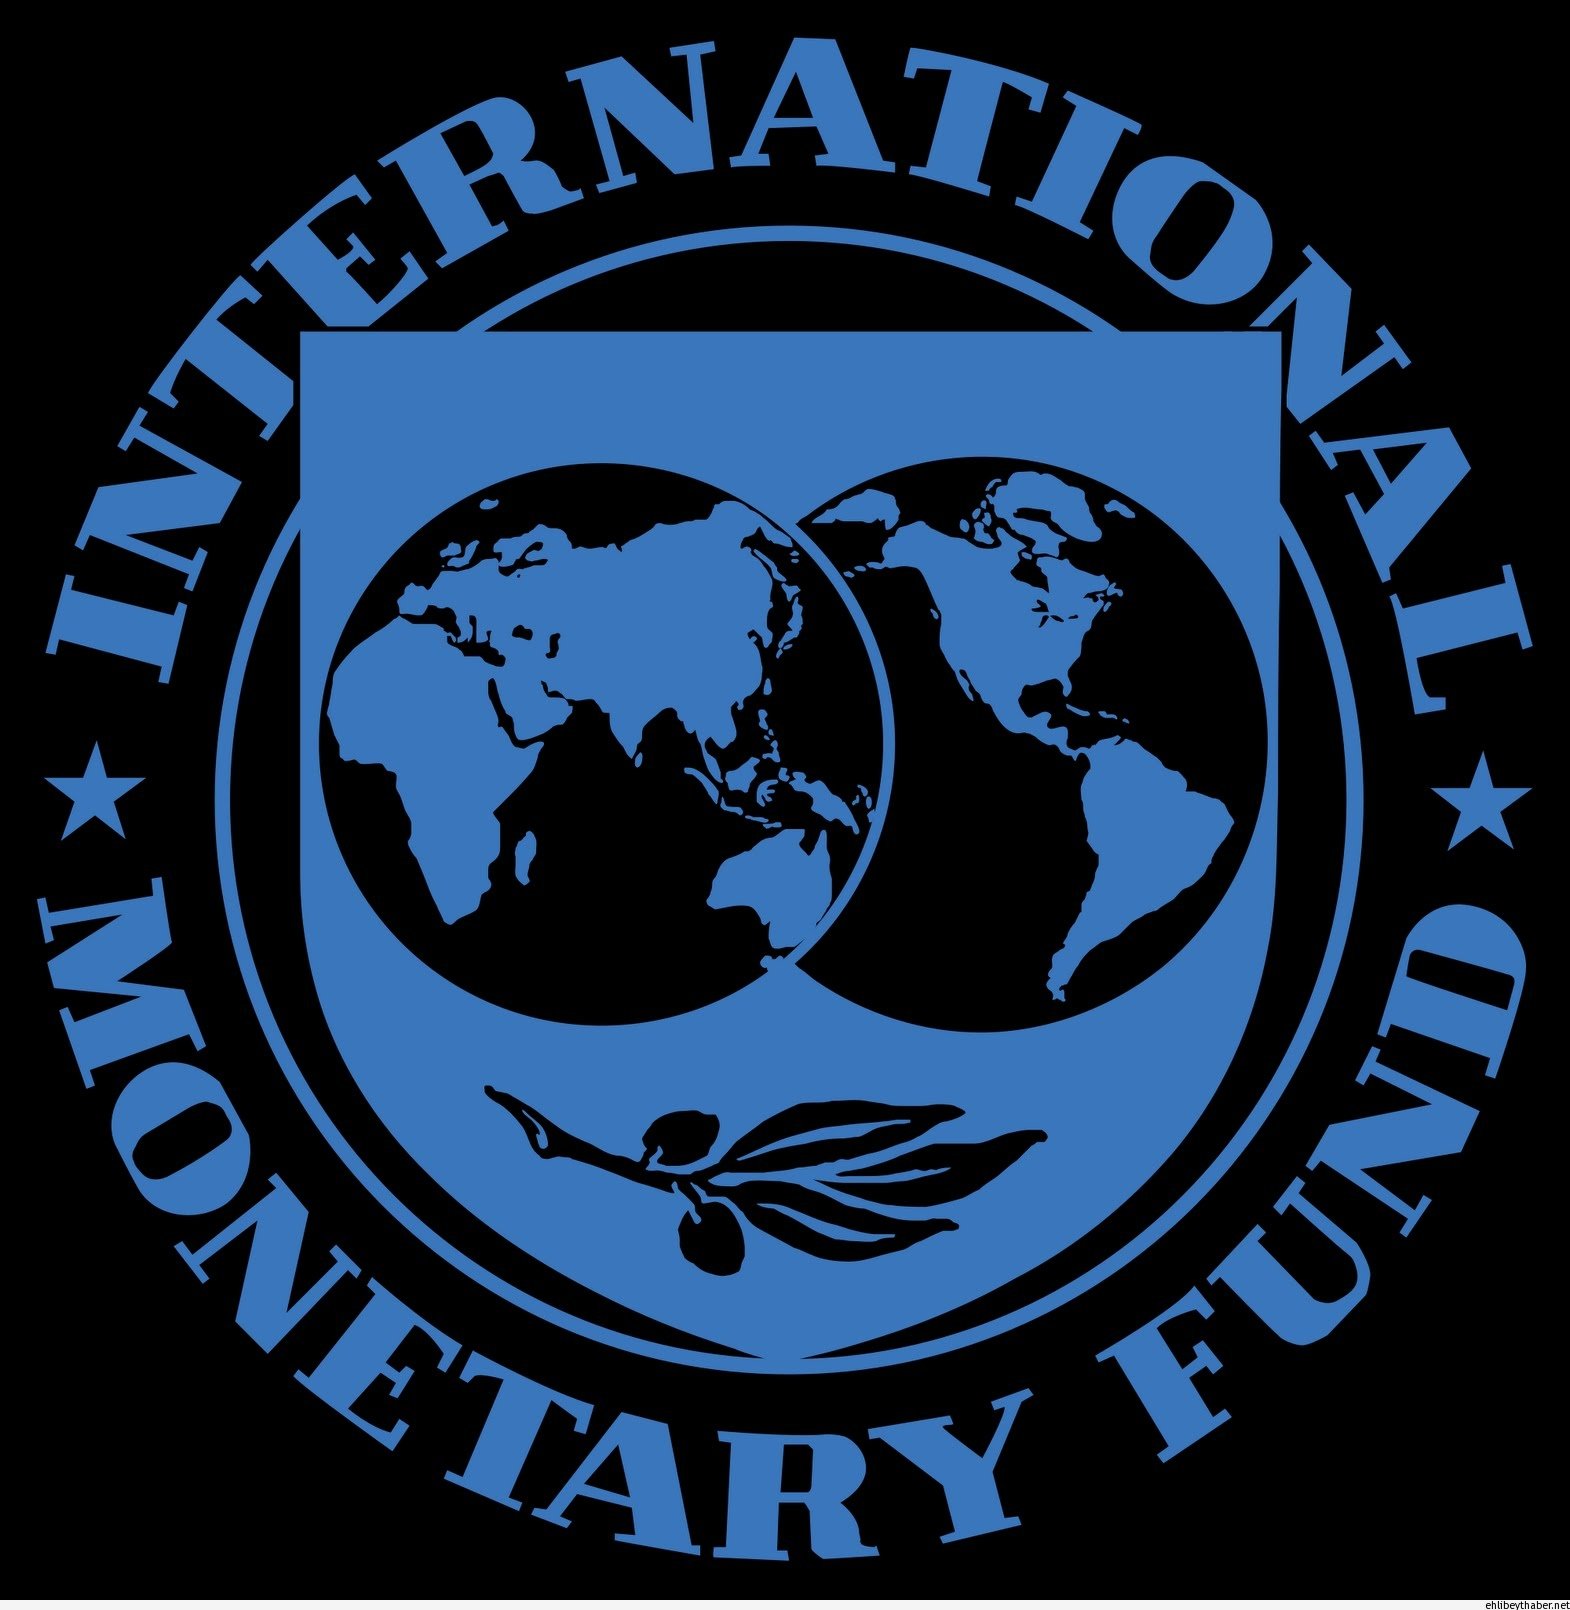 Мвф является. Международный валютный фонд (МВФ) - International monetary Fund (IMF). МВФ логотип. Герб международного валютного фонда. Международный валютный фонд МВФ логотип.